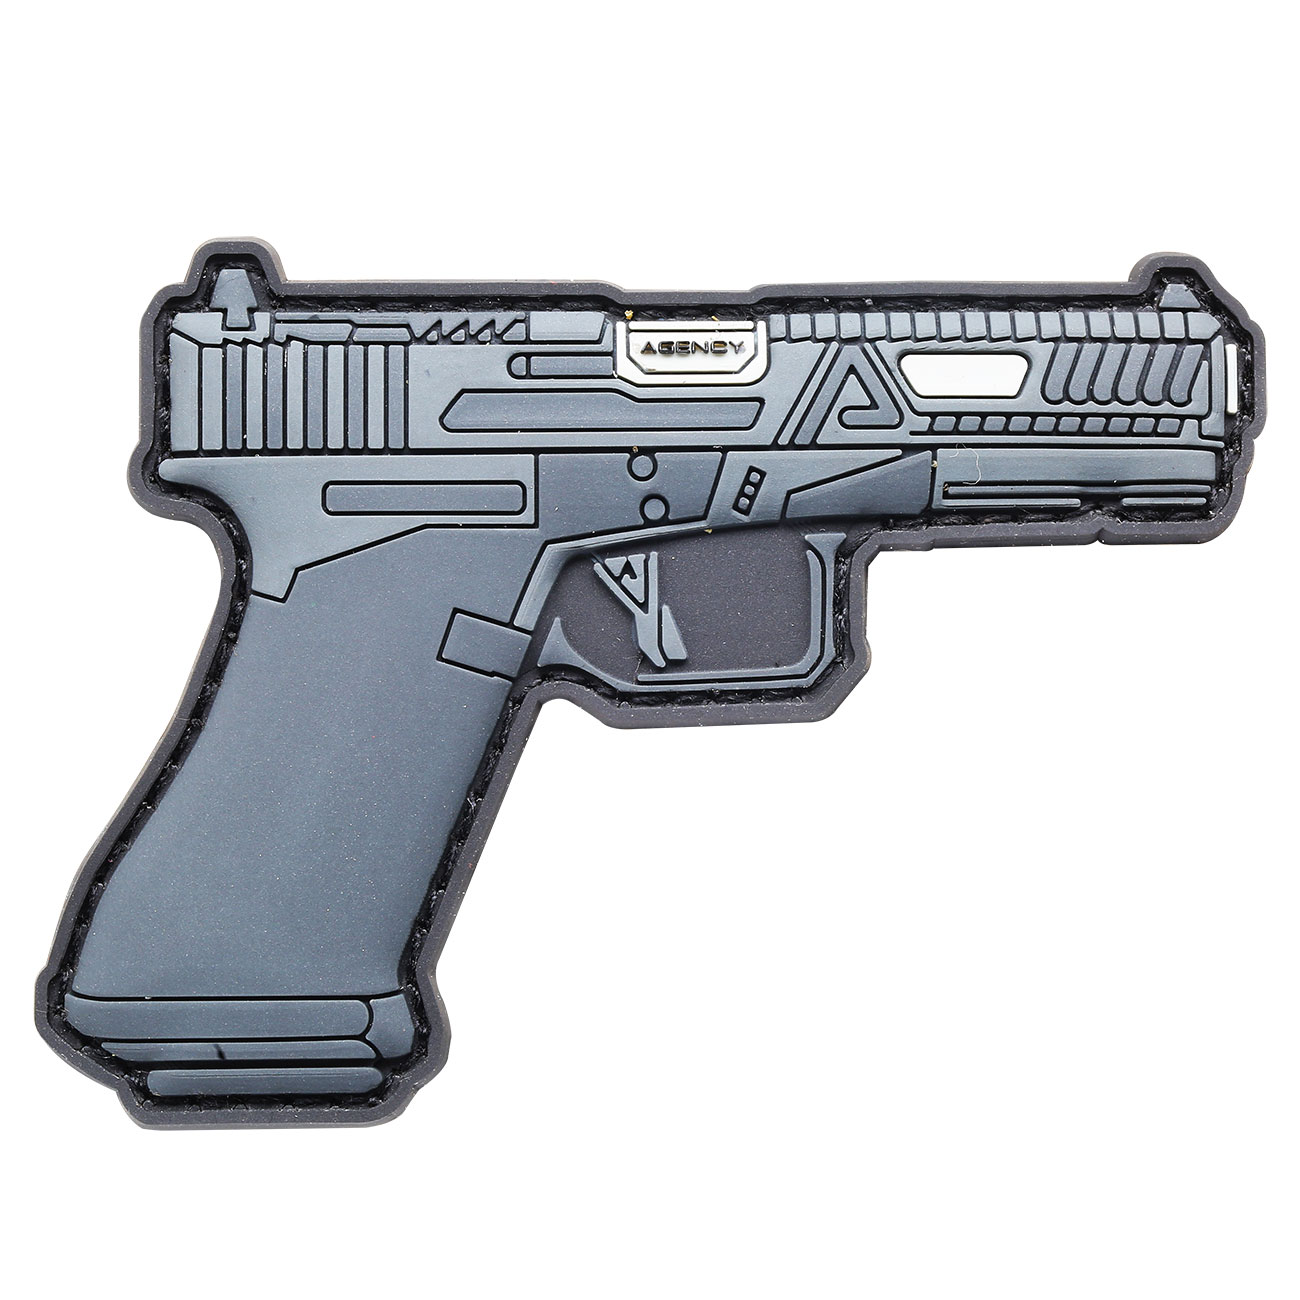 RWA 3D Rubber Patch Agency Arms M&P Field Pistole grau